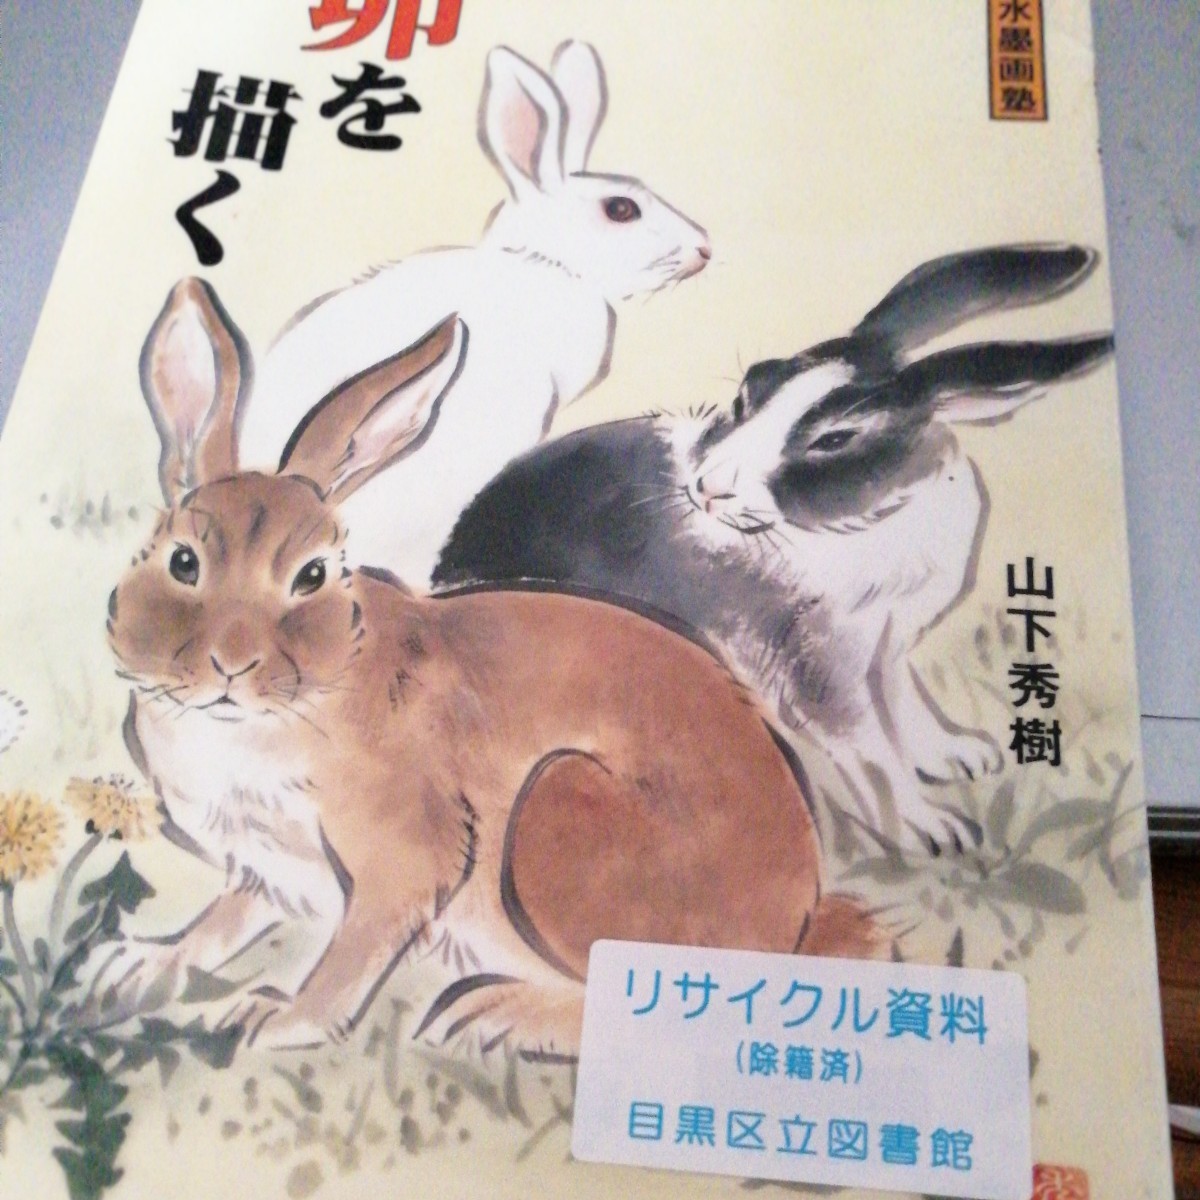 एक खरगोश का चित्रांकन: इंक पेंटिंग स्कूल/हिदेकी यामाशिता (लेखक), कला, मनोरंजन, चित्रकारी, तकनीक पुस्तक